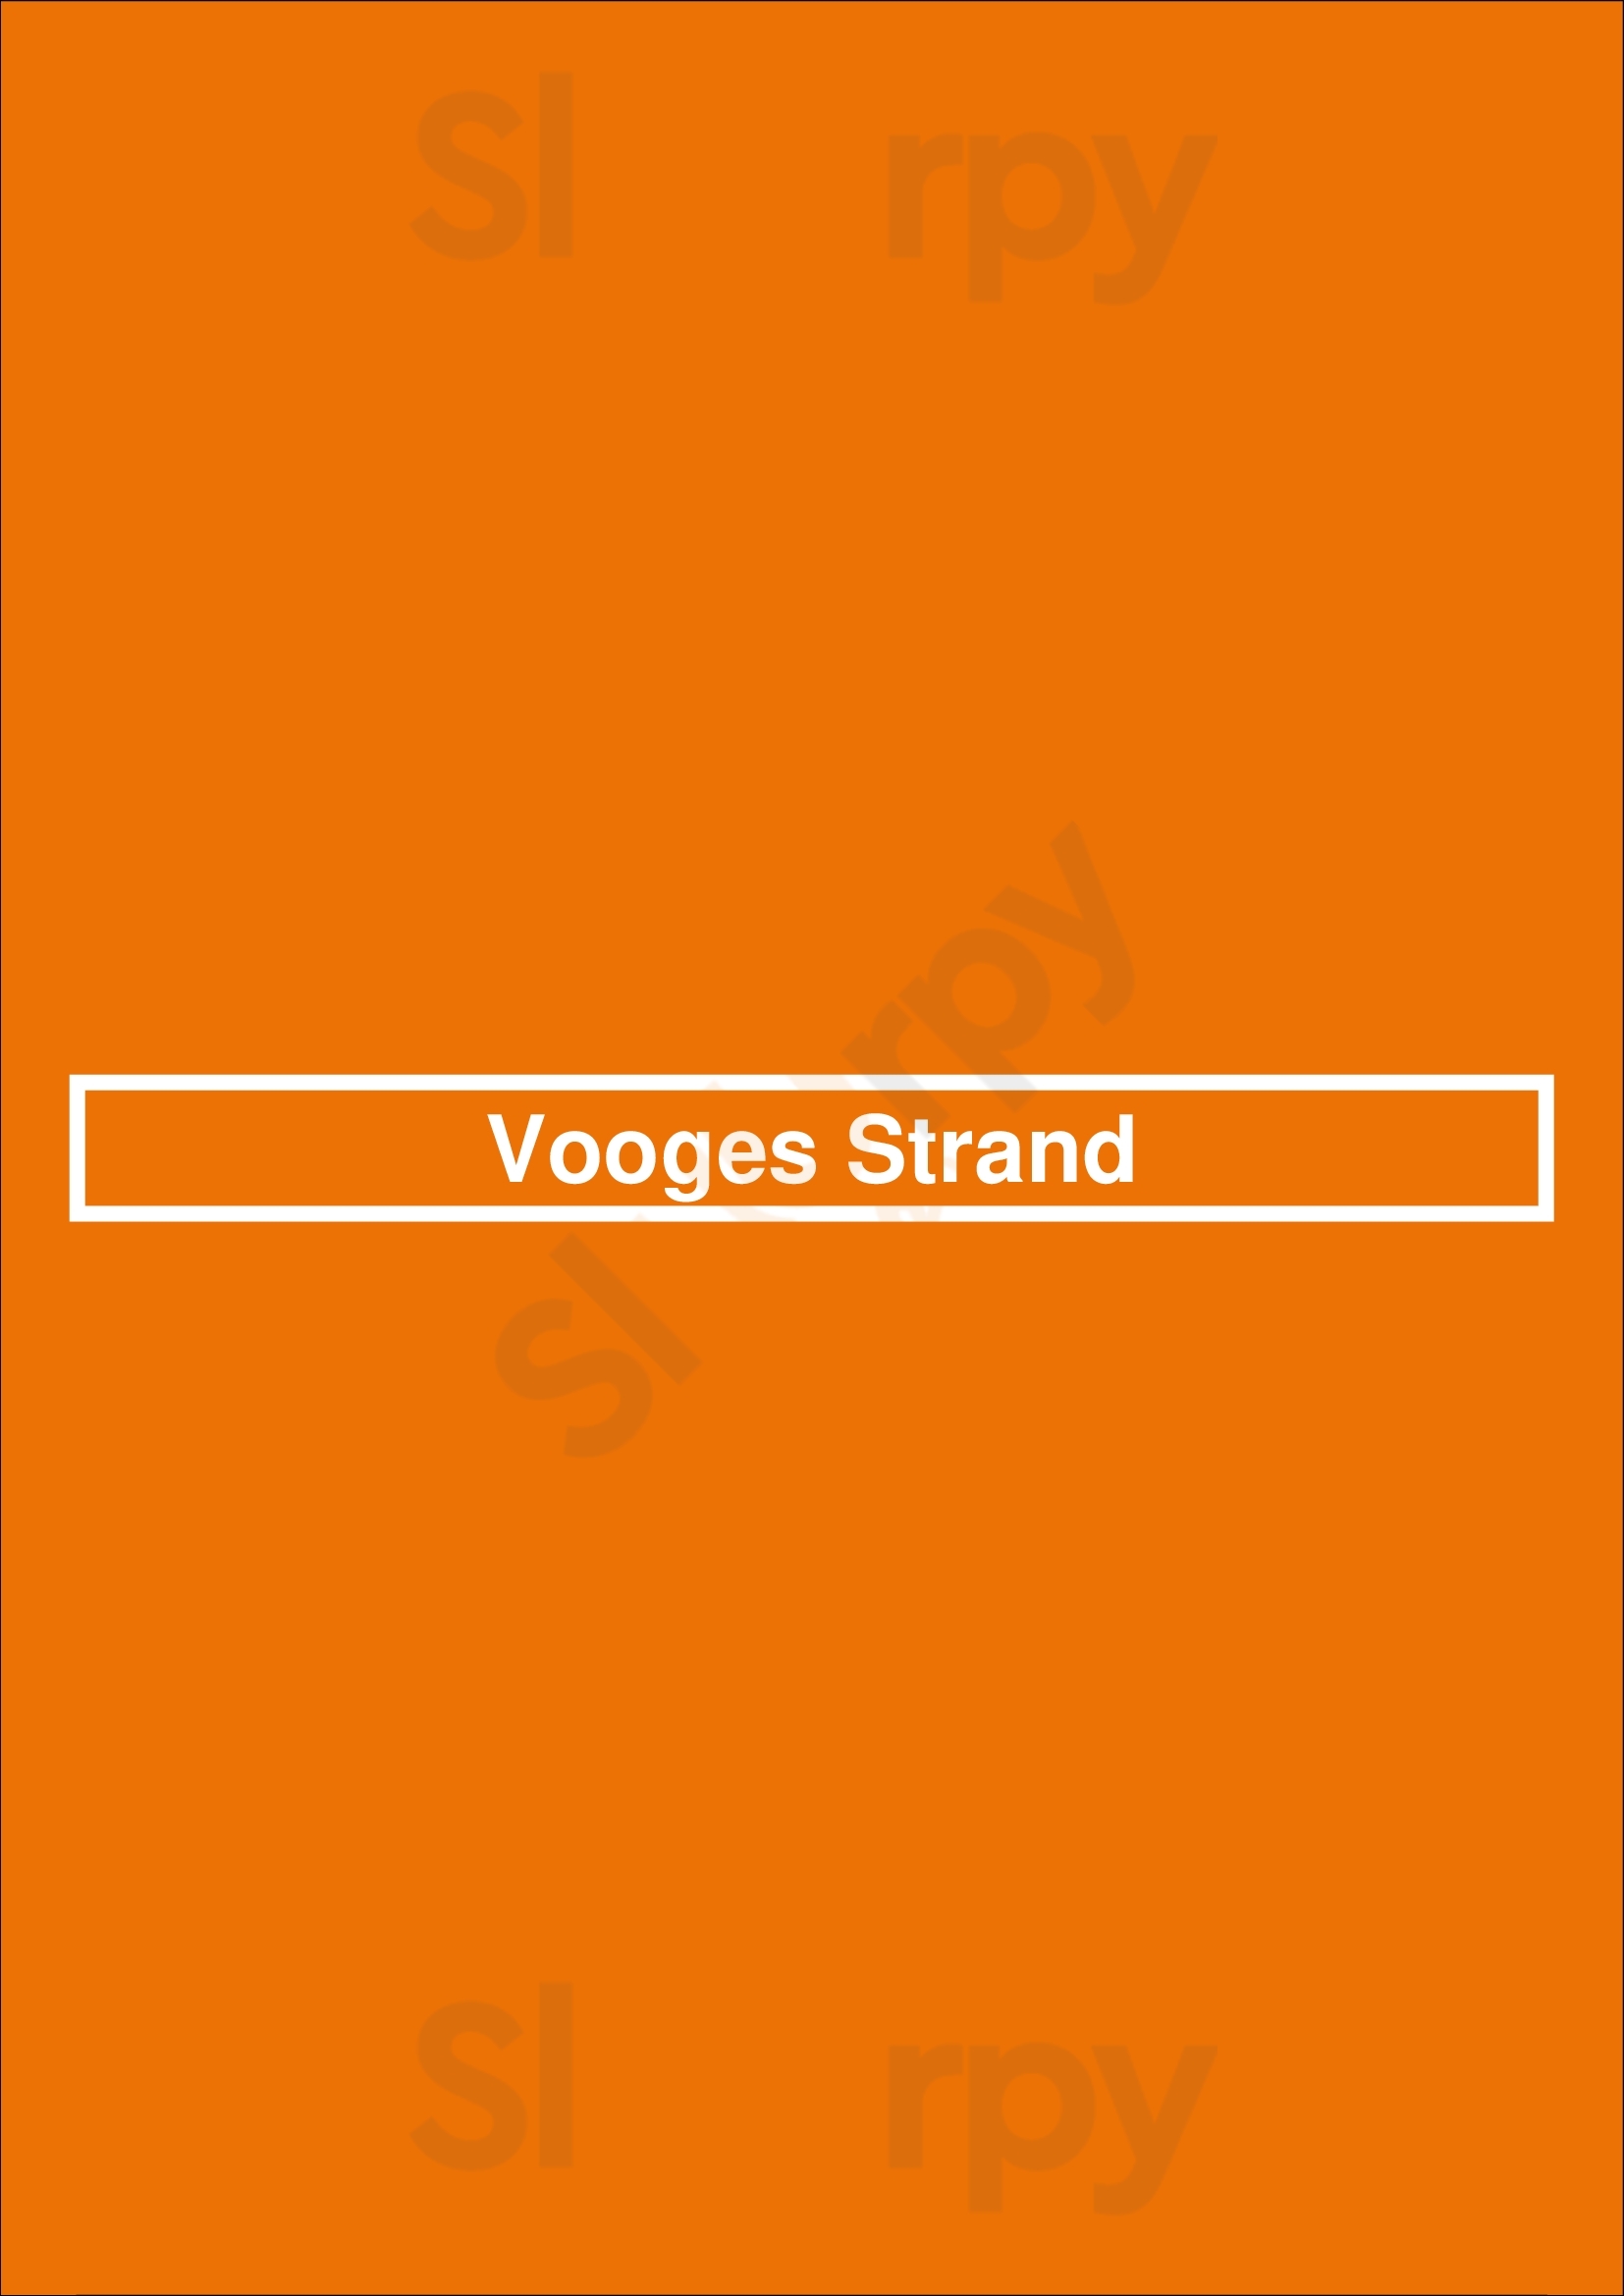 Vooges Strand Zandvoort Menu - 1